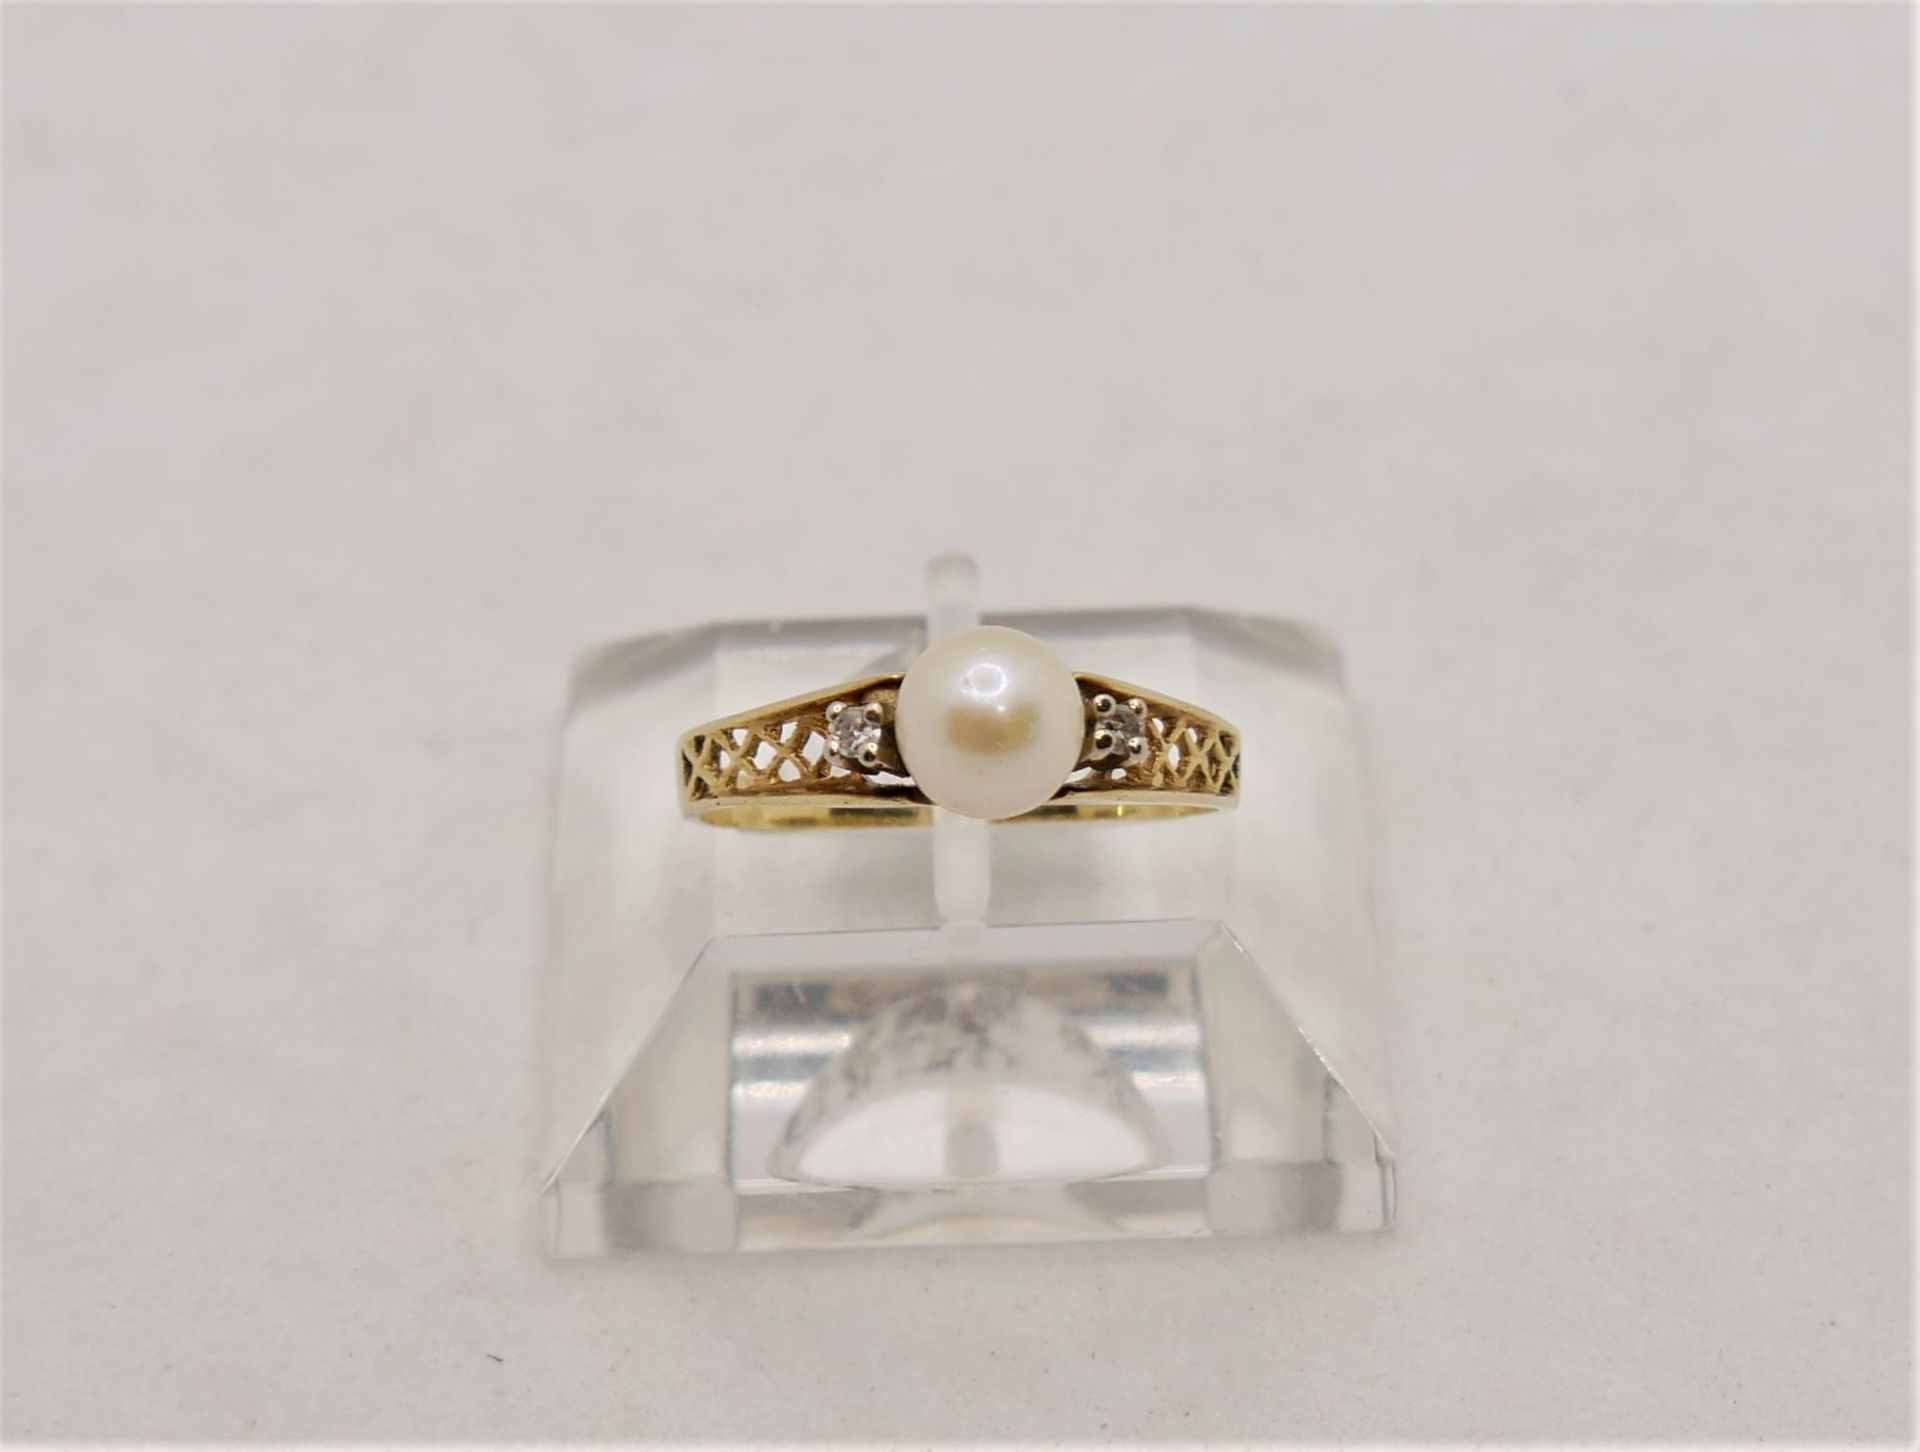 Damenring, 585er Gelbgold, besetzt mit einer Perle sowie 2 Brillianten. Ringgröße 60,5 - Bild 3 aus 3